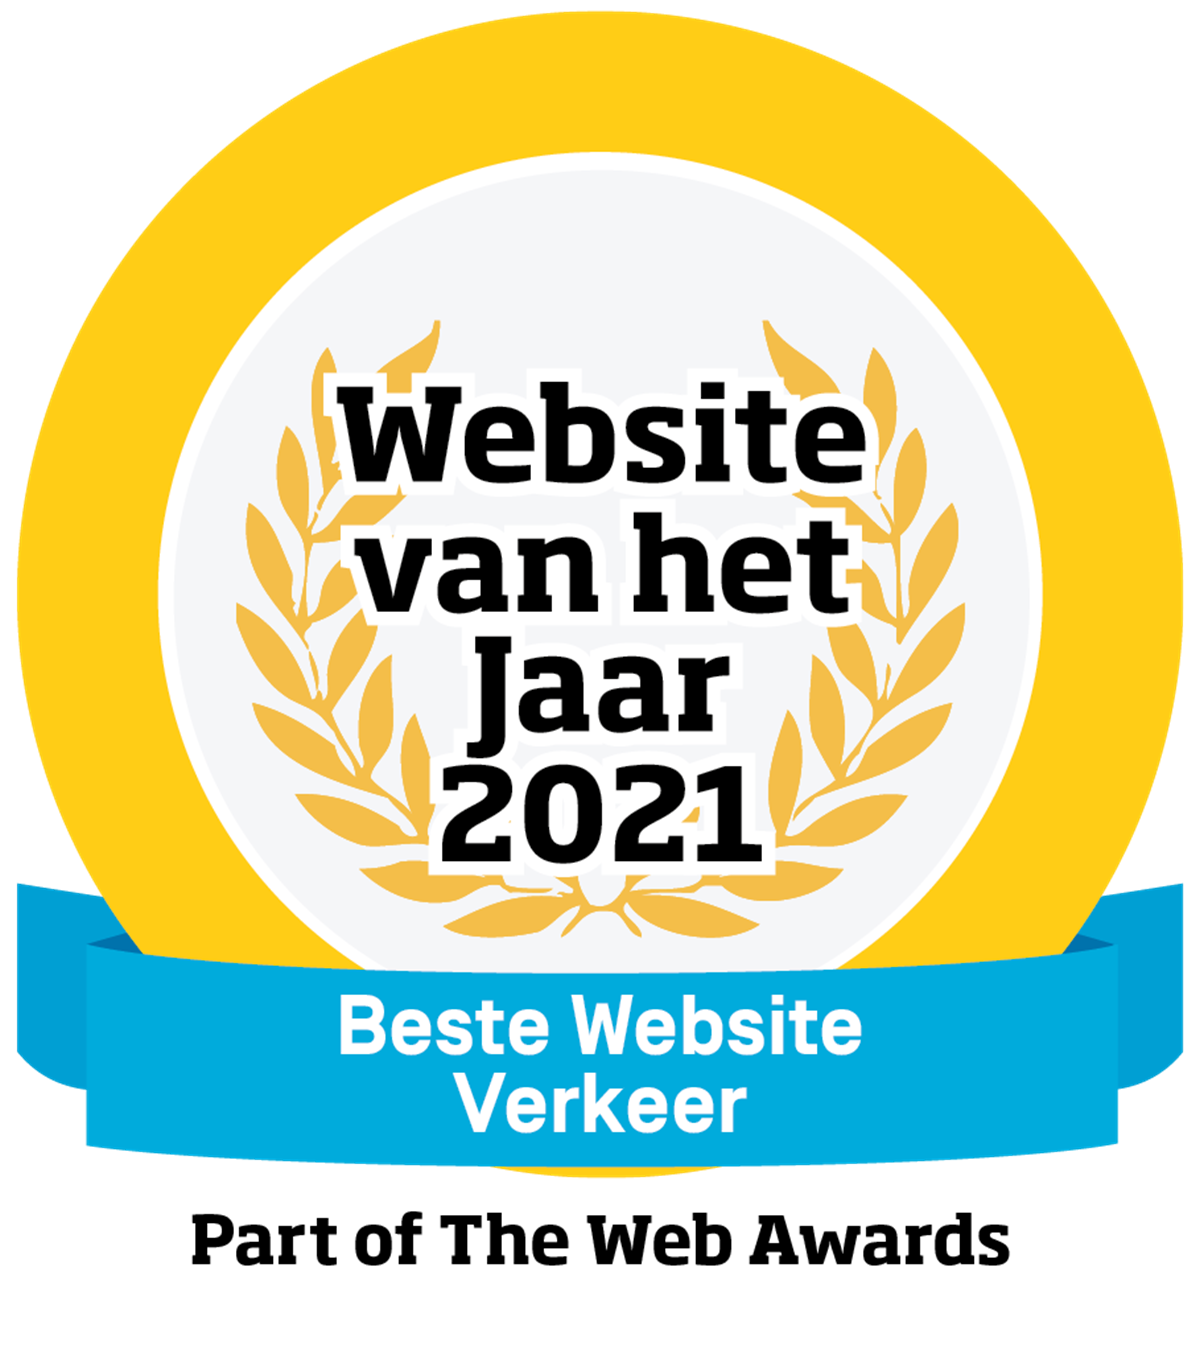 Het logo voor Beste Website van het jaar in de categorie Verkeer